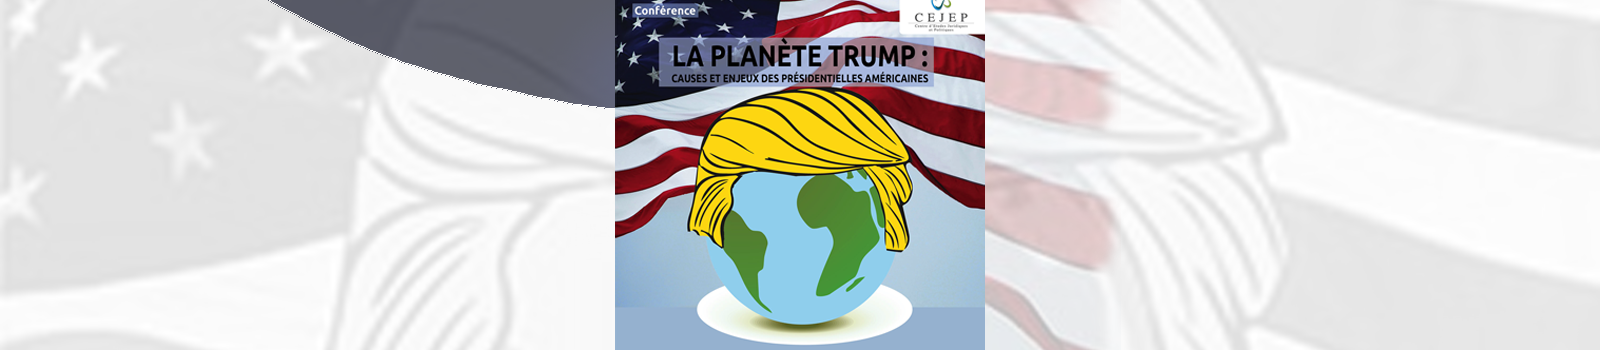 La planète Trump : causes et enjeux des présidentielles américaines